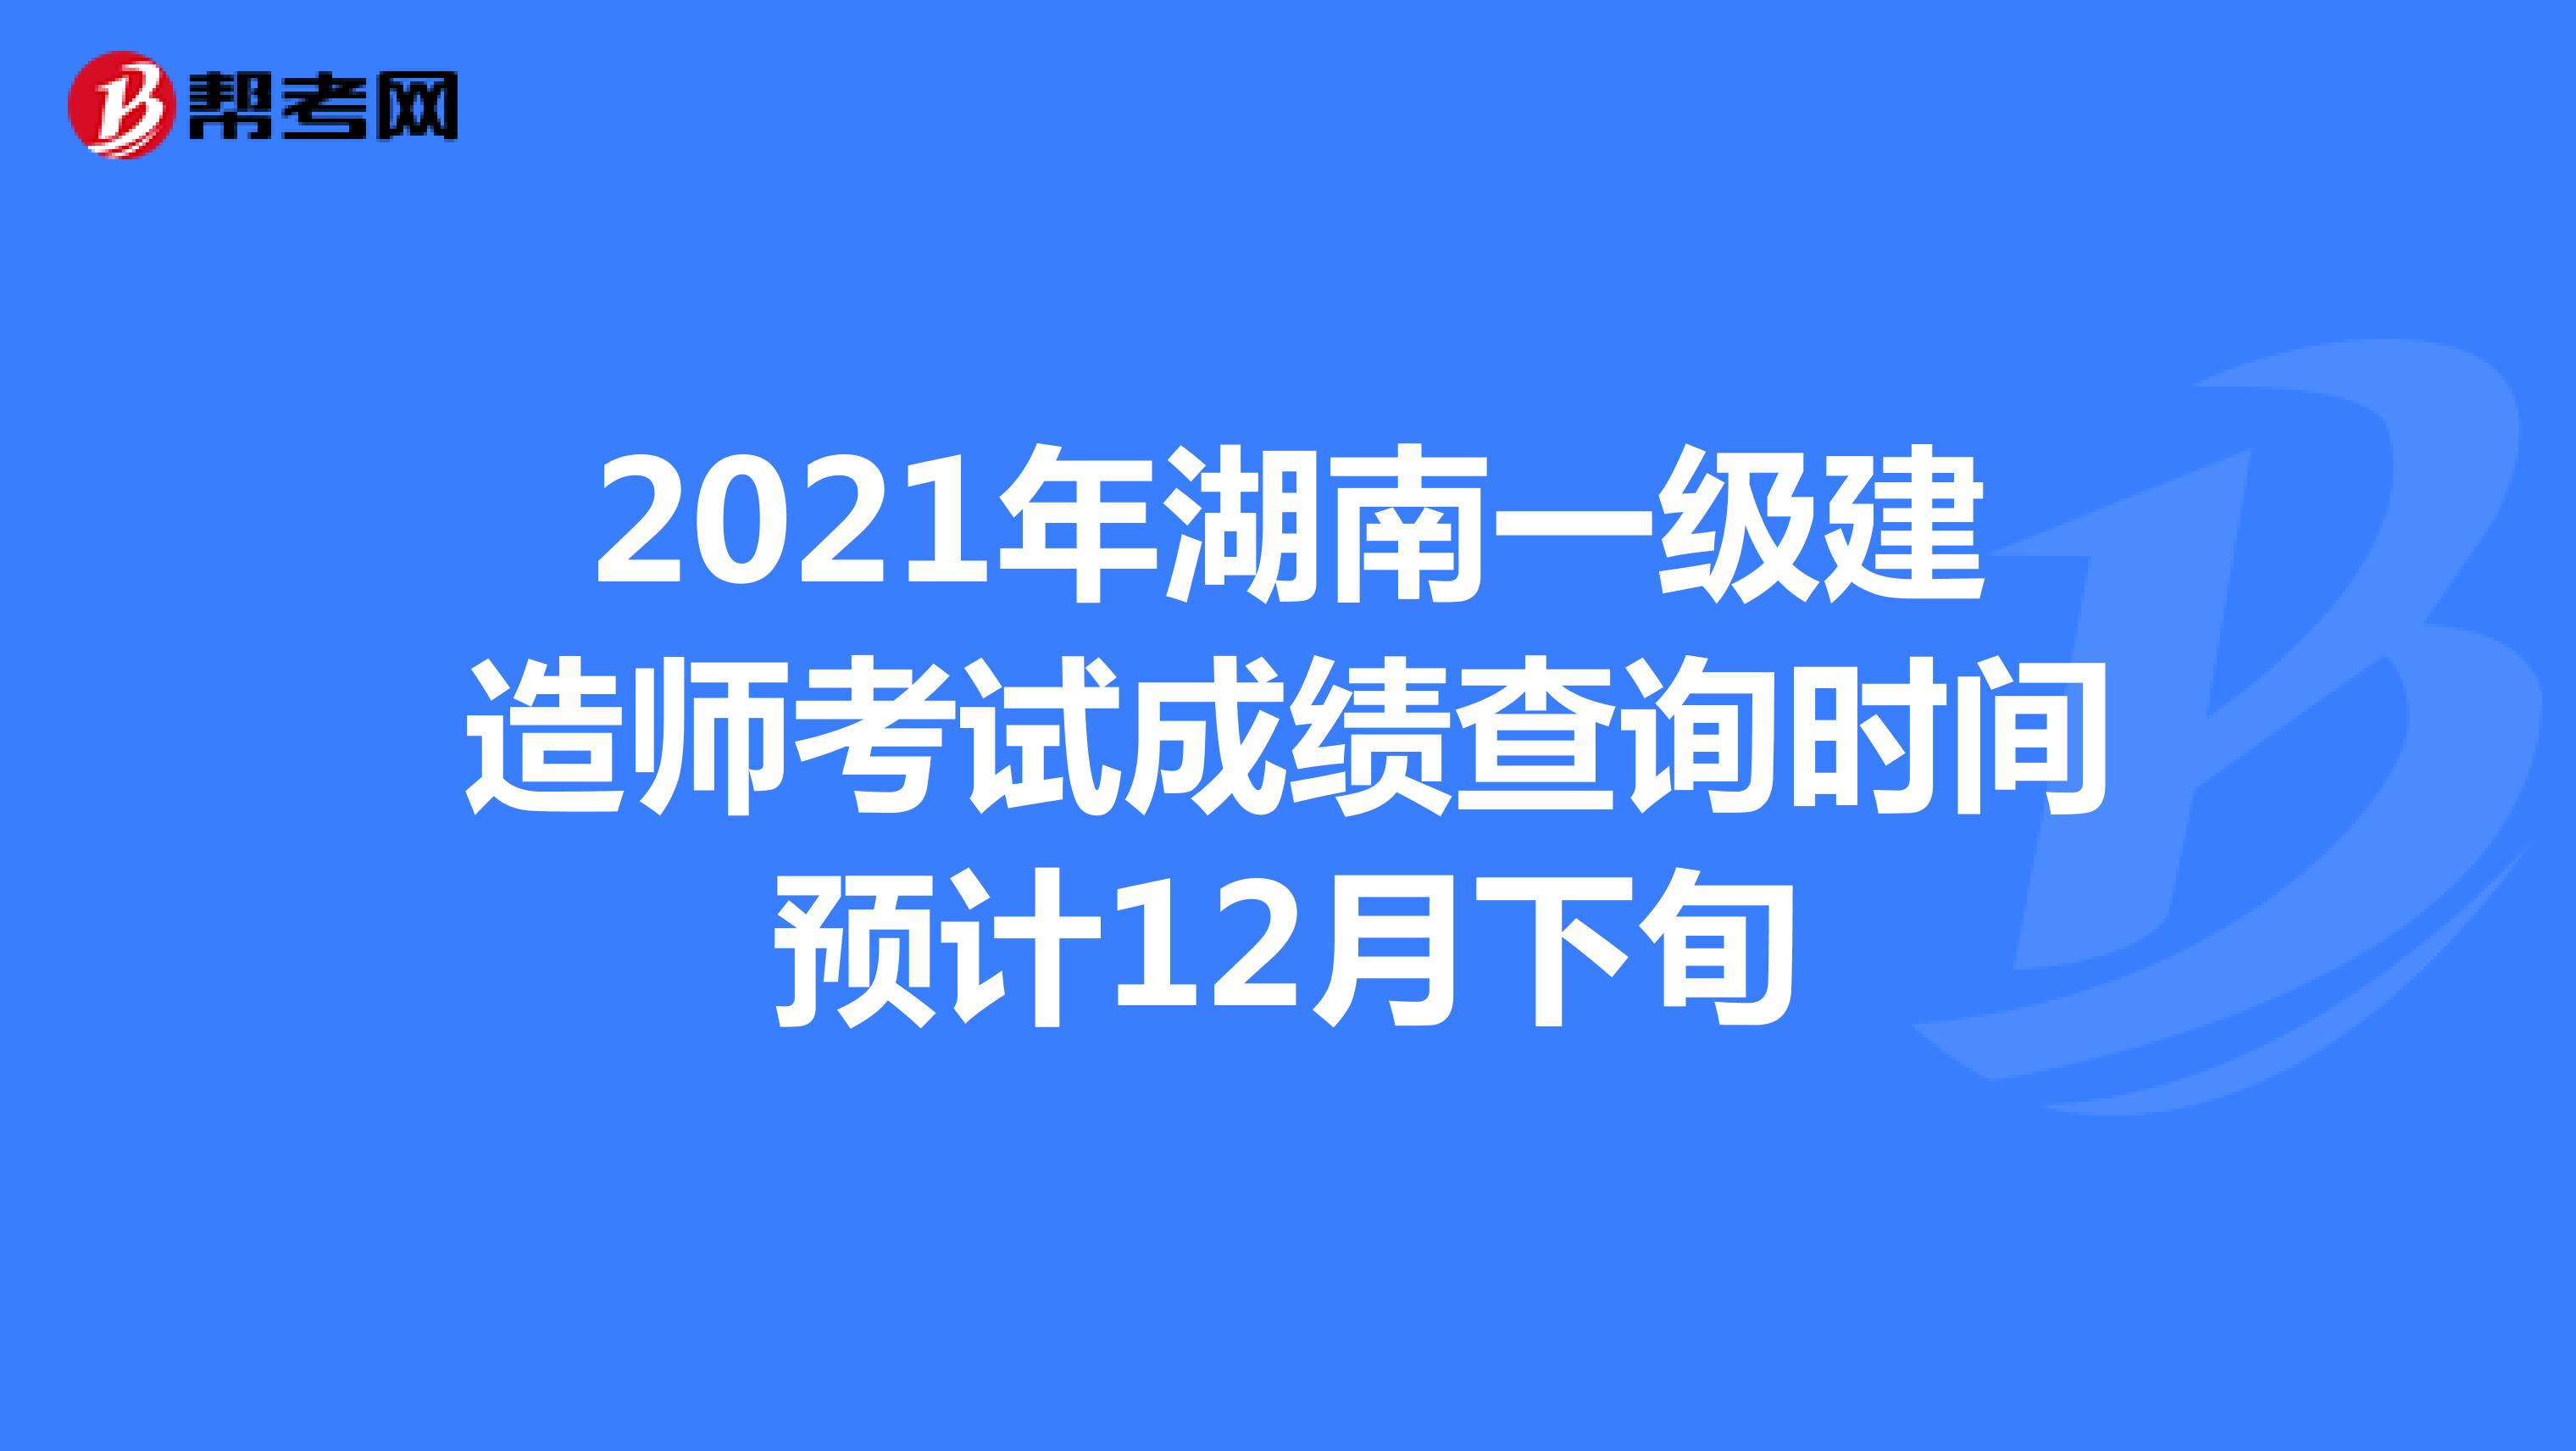 2021年湖南一级建造师考试成绩查询时间预计12月下旬